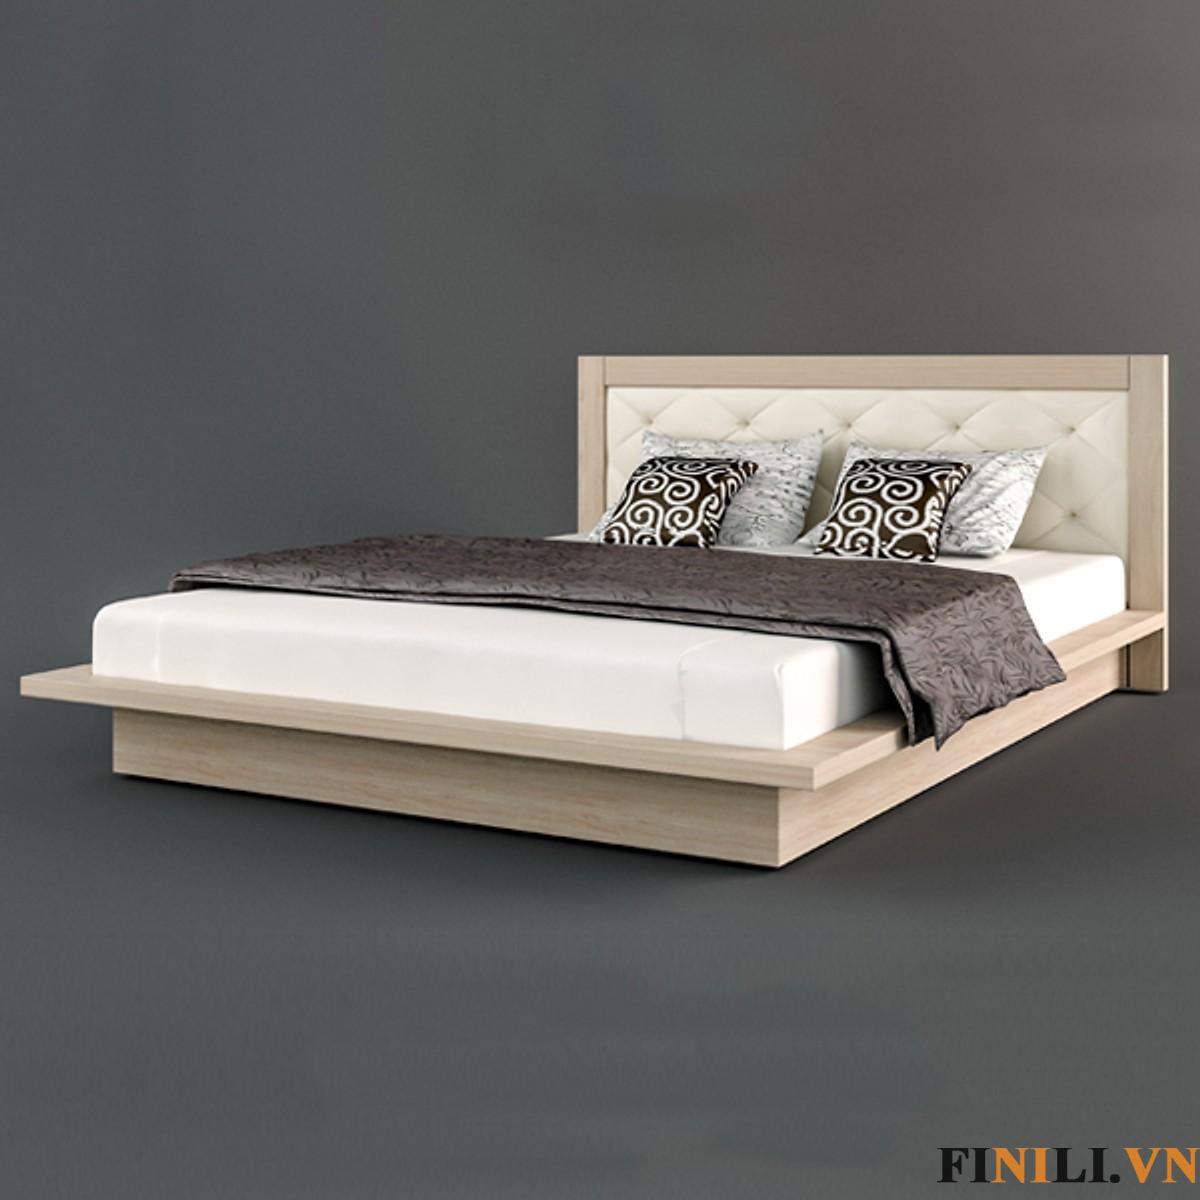 Giường ngủ kiểu Nhật thiết kế đơn giản, nhưng đa dạng về màu sắc: màu xám, sồi hay trắng mang tới không gian đơn giản mà tinh tế